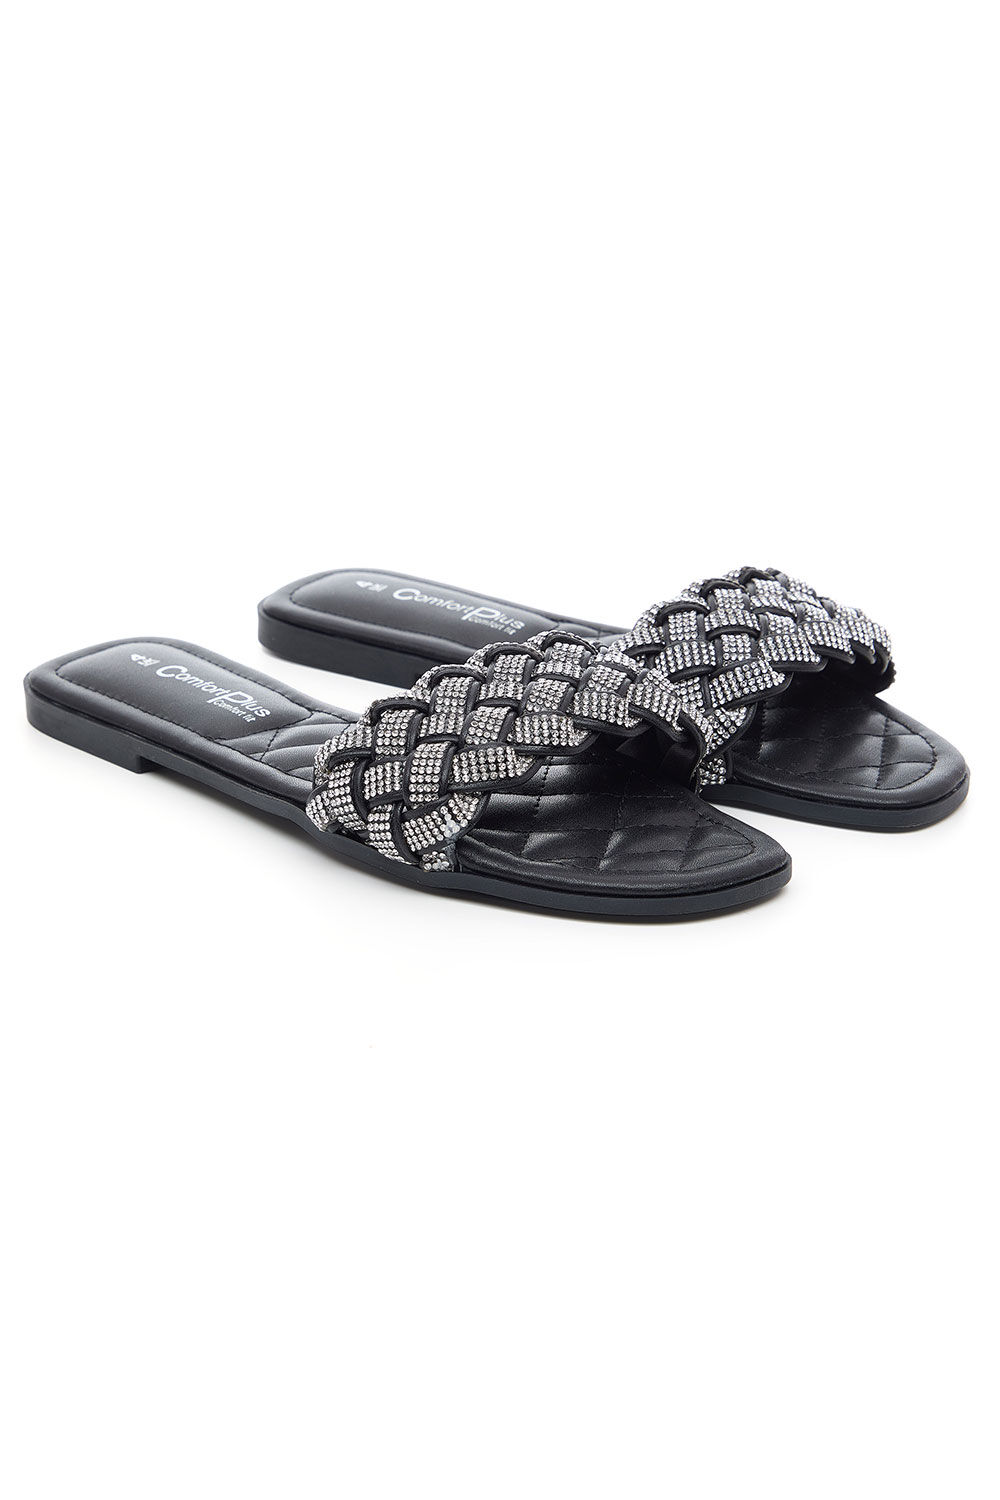 Comfort Plus Black - Diamante Weave Front Band Flat Sandals, Size: 7